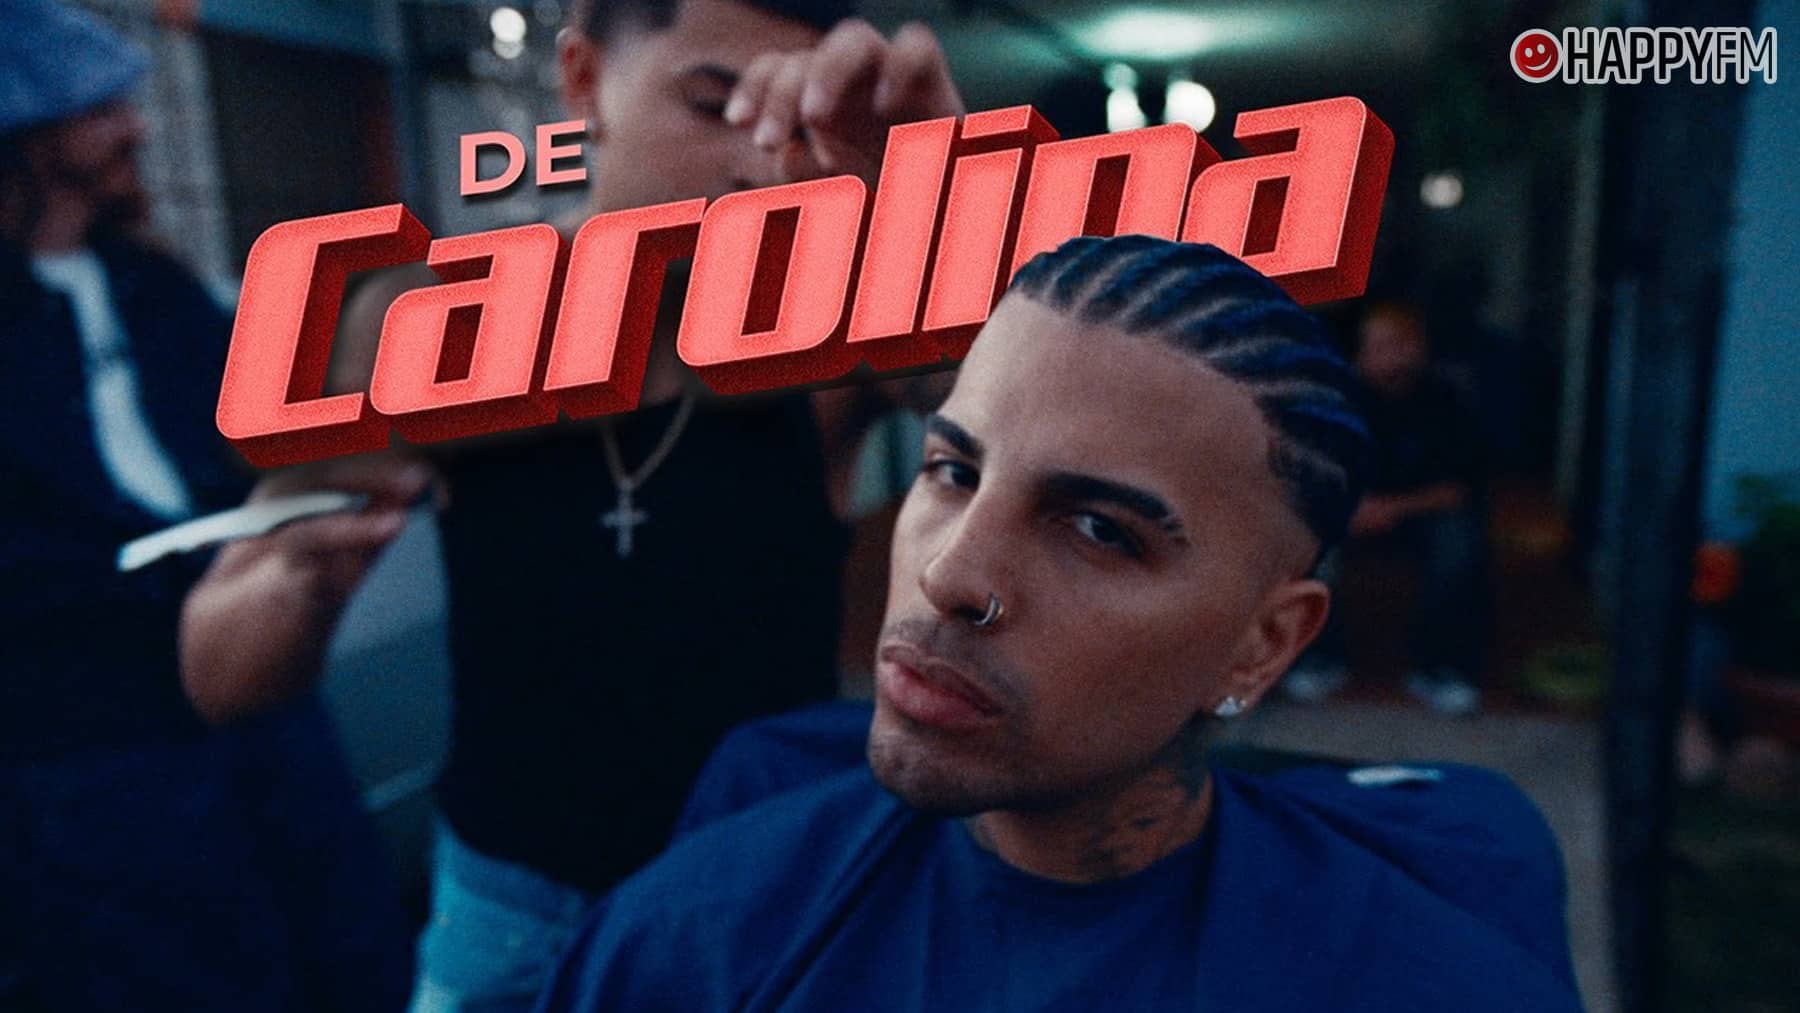 ‘De Carolina’, de Rauw Alejandro y DJ Playero: letra y vídeo loading=